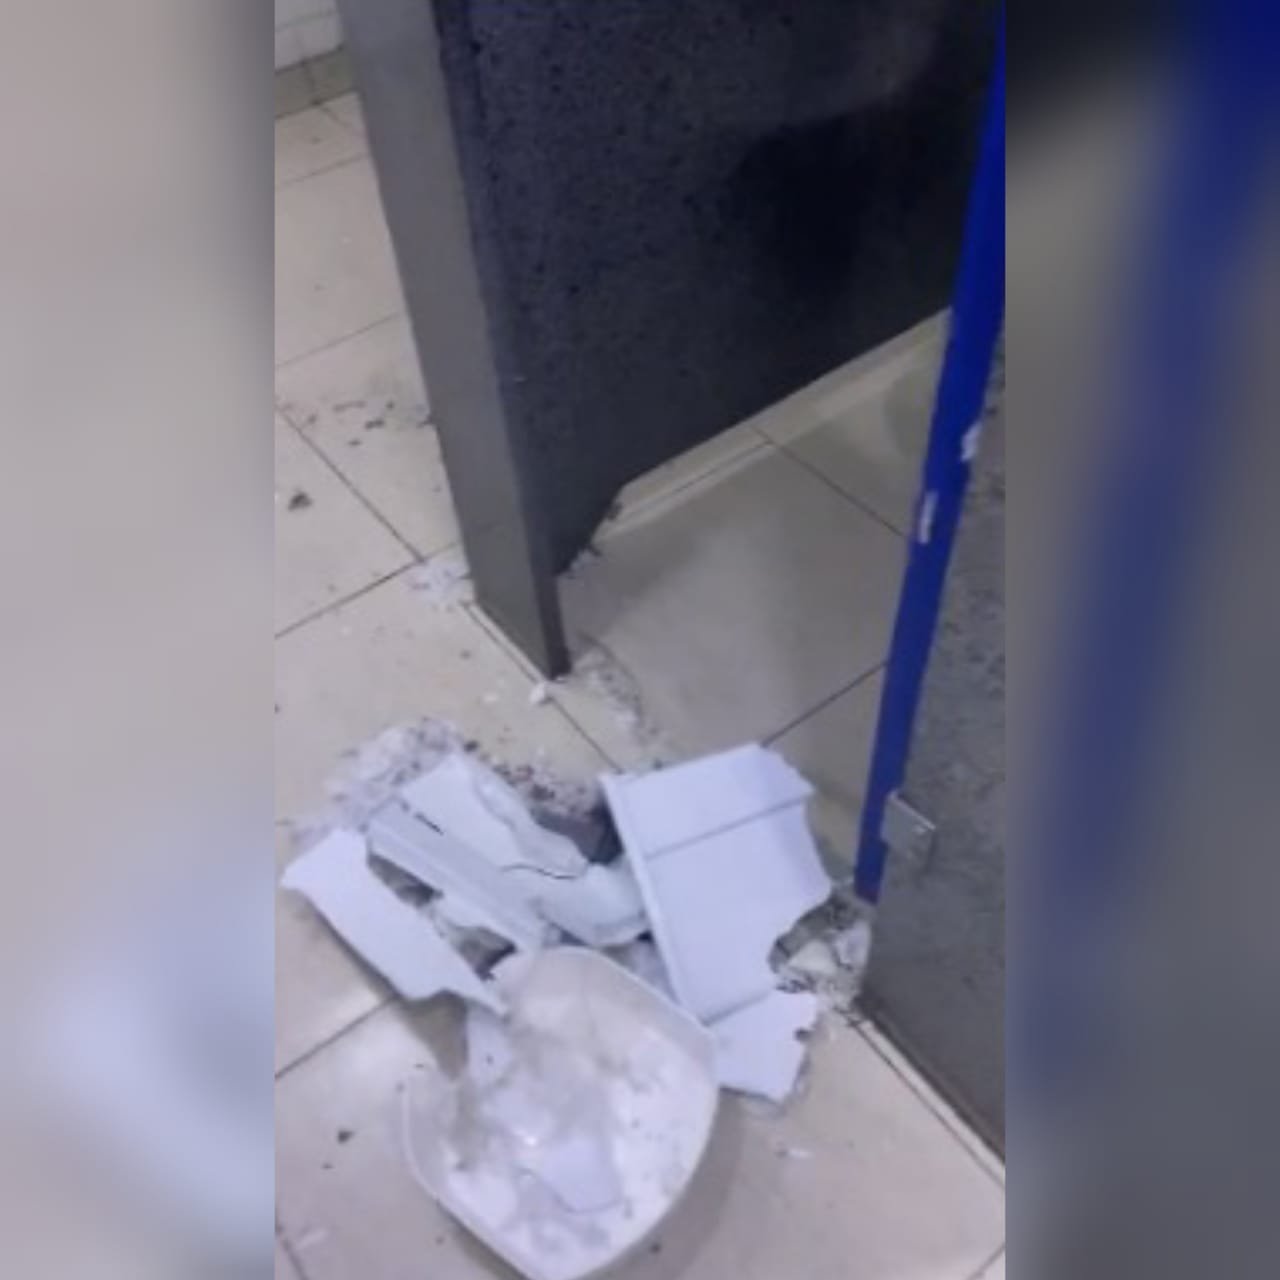 Um estudante de Medicina denunciou uma explosão ocorrida no banheiro de um hipermercado localizado na Av. Portugal, em Goiânia. (Foto: reprodução/Leitor Mais Goiás)